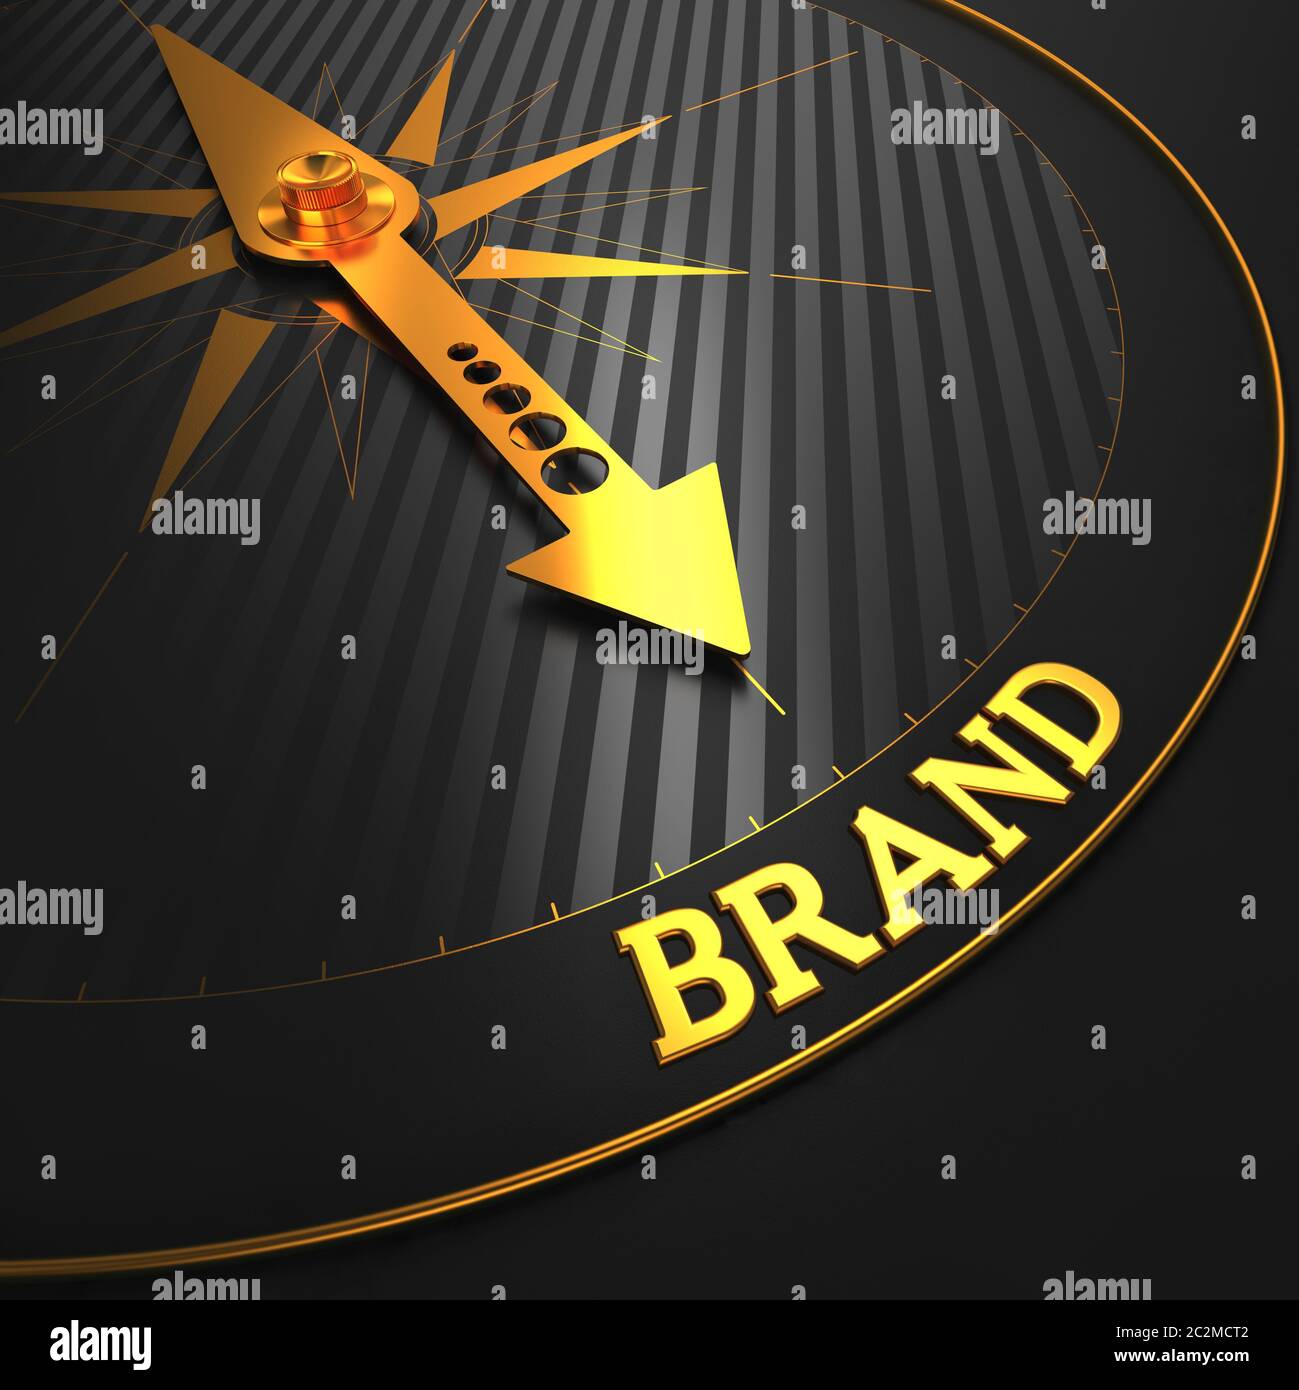 Marchio - concetto aziendale. Ago Golden Compass su un campo nero che indica la parola "Brand". Foto Stock